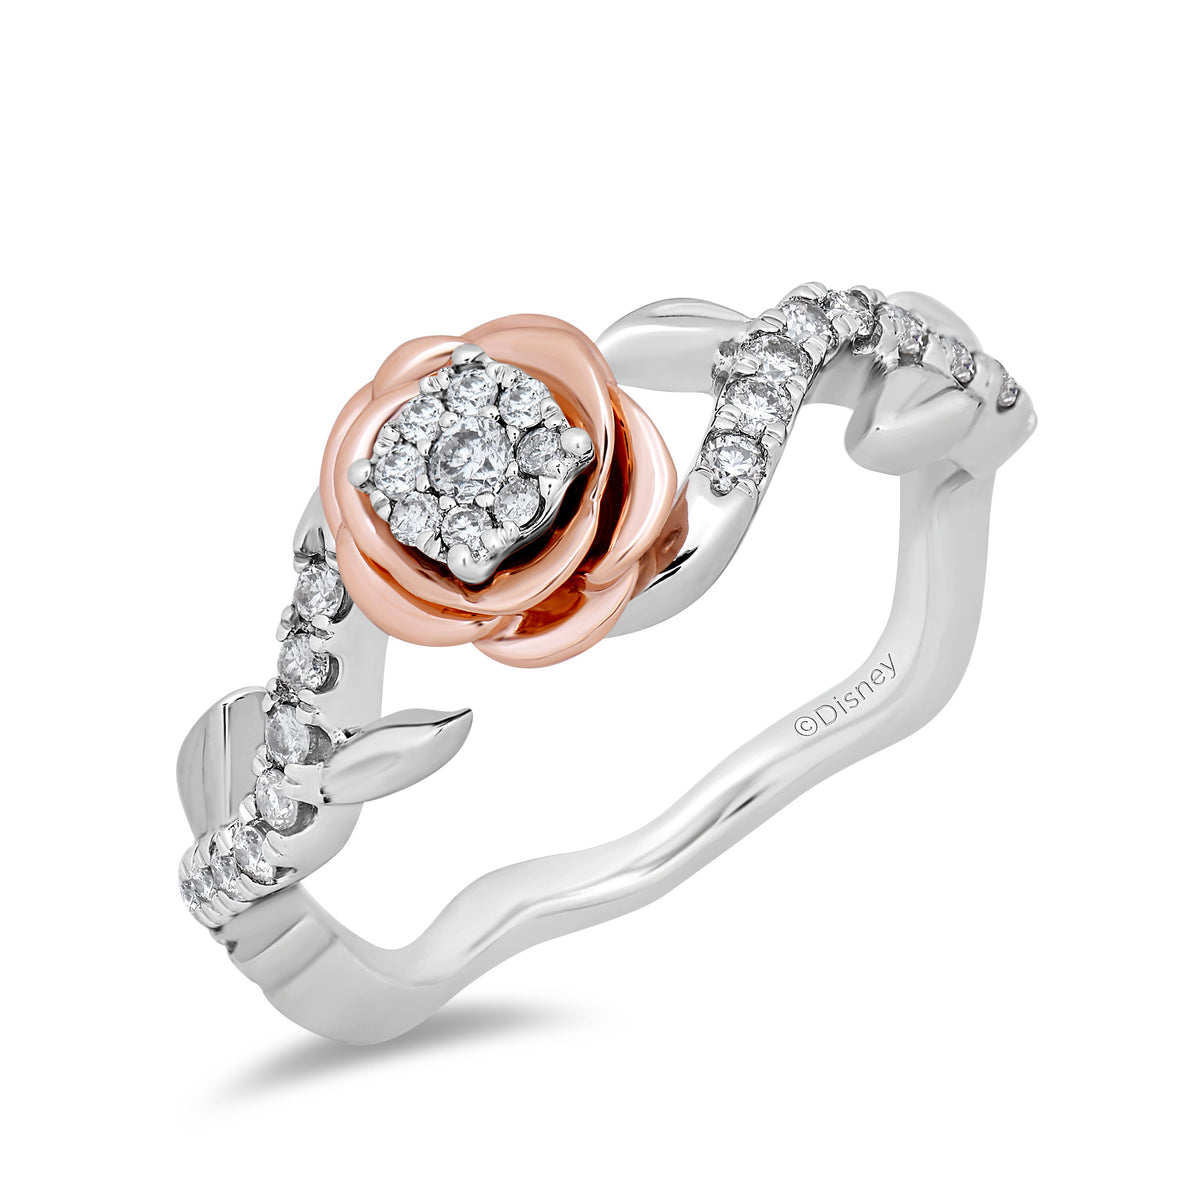 Disney Belle Inspired Diamond Promise Ring in 14K White Gold & Rose Gold  1/4 CTTW